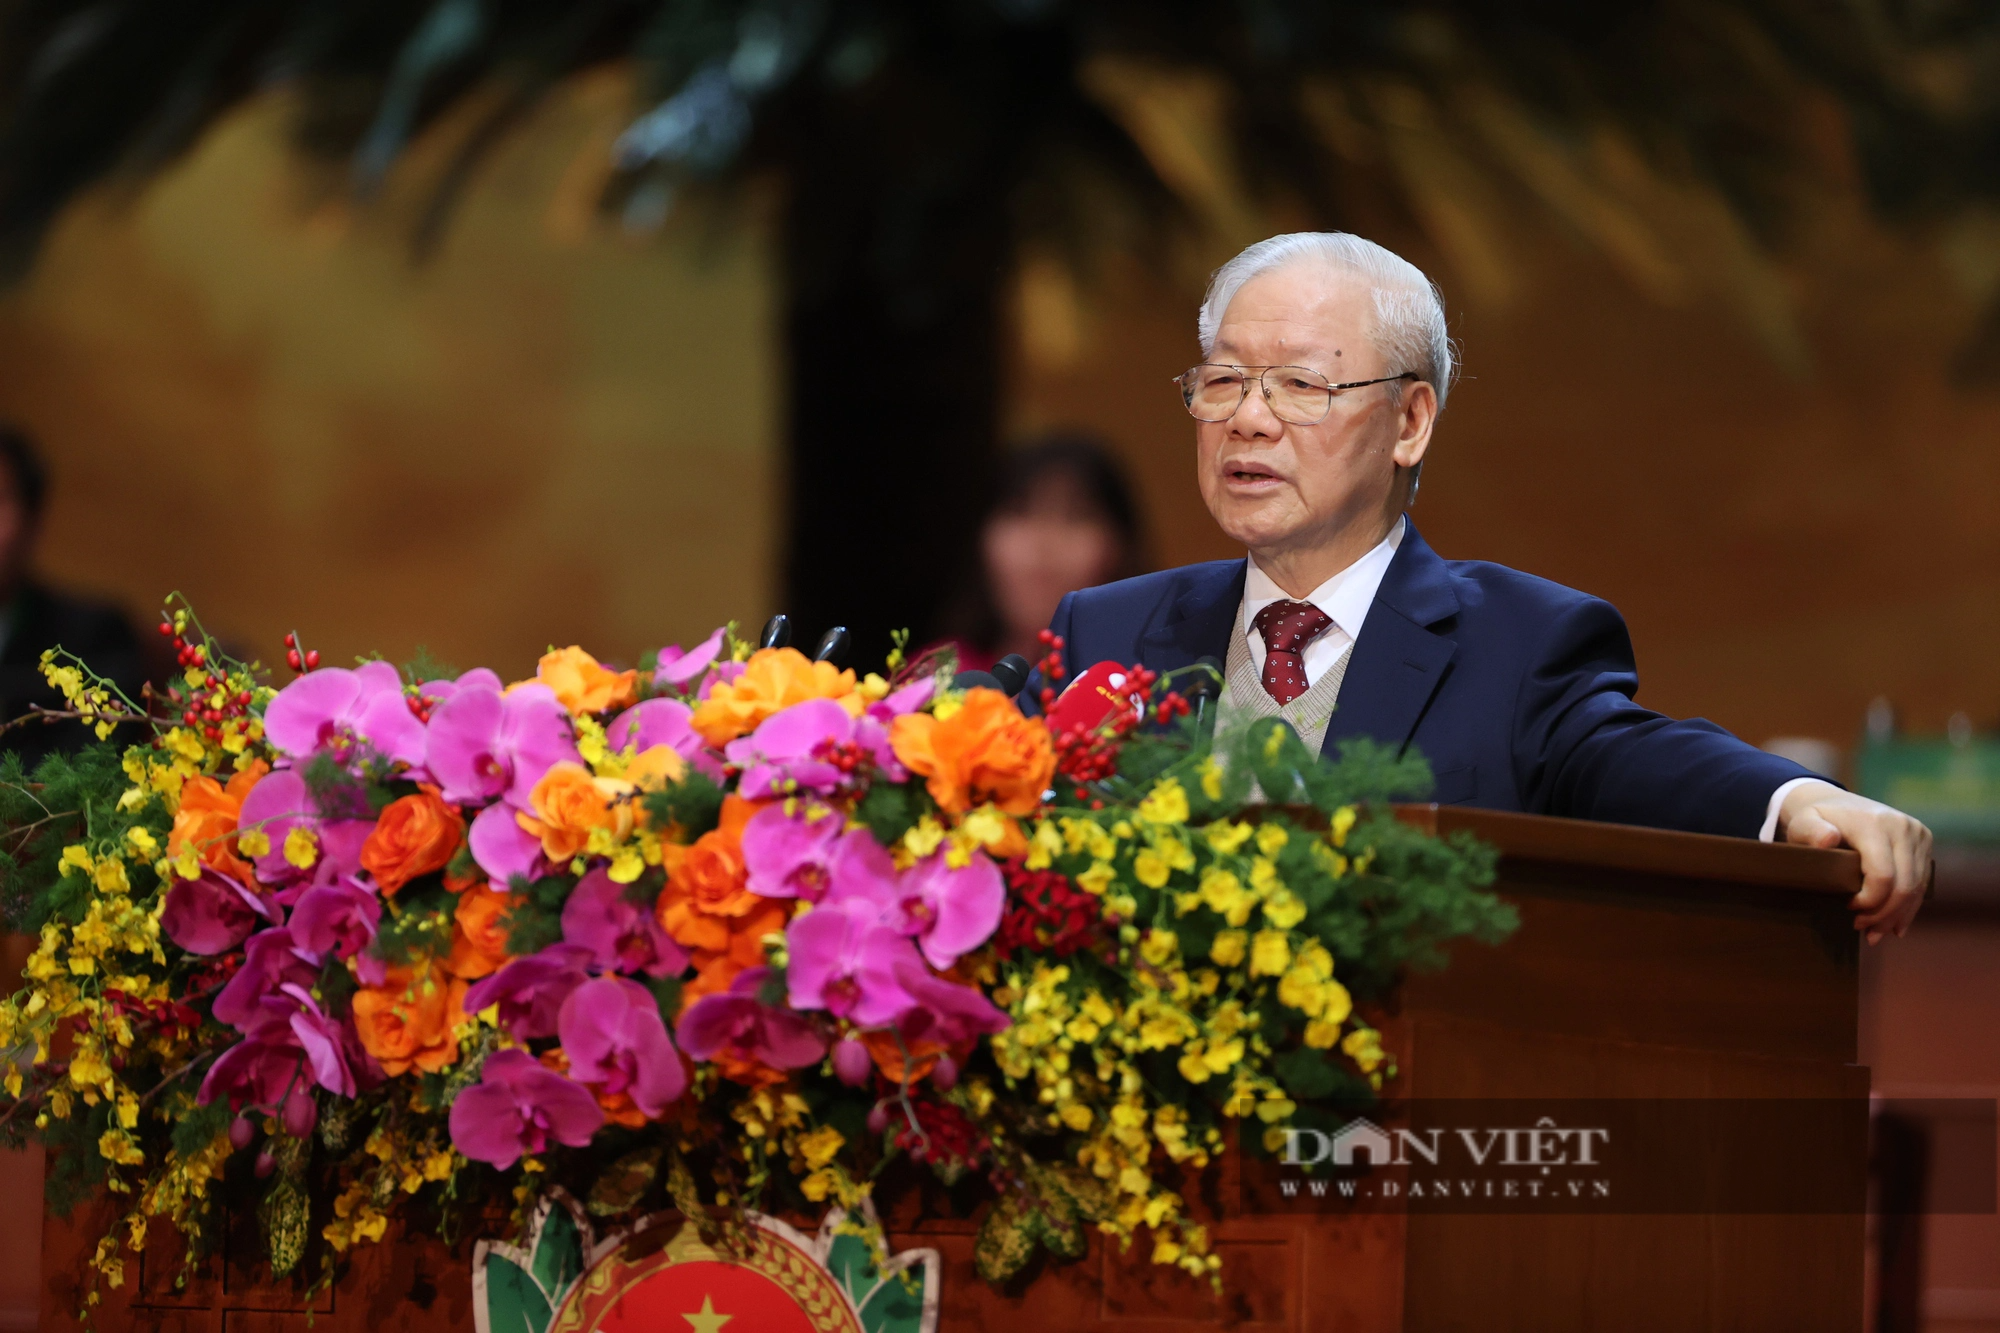 Toàn văn bài phát biểu của Tổng Bí thư Nguyễn Phú Trọng tại Đại hội đại biểu toàn quốc Hội NDVN lần thứ VIII - Ảnh 1.